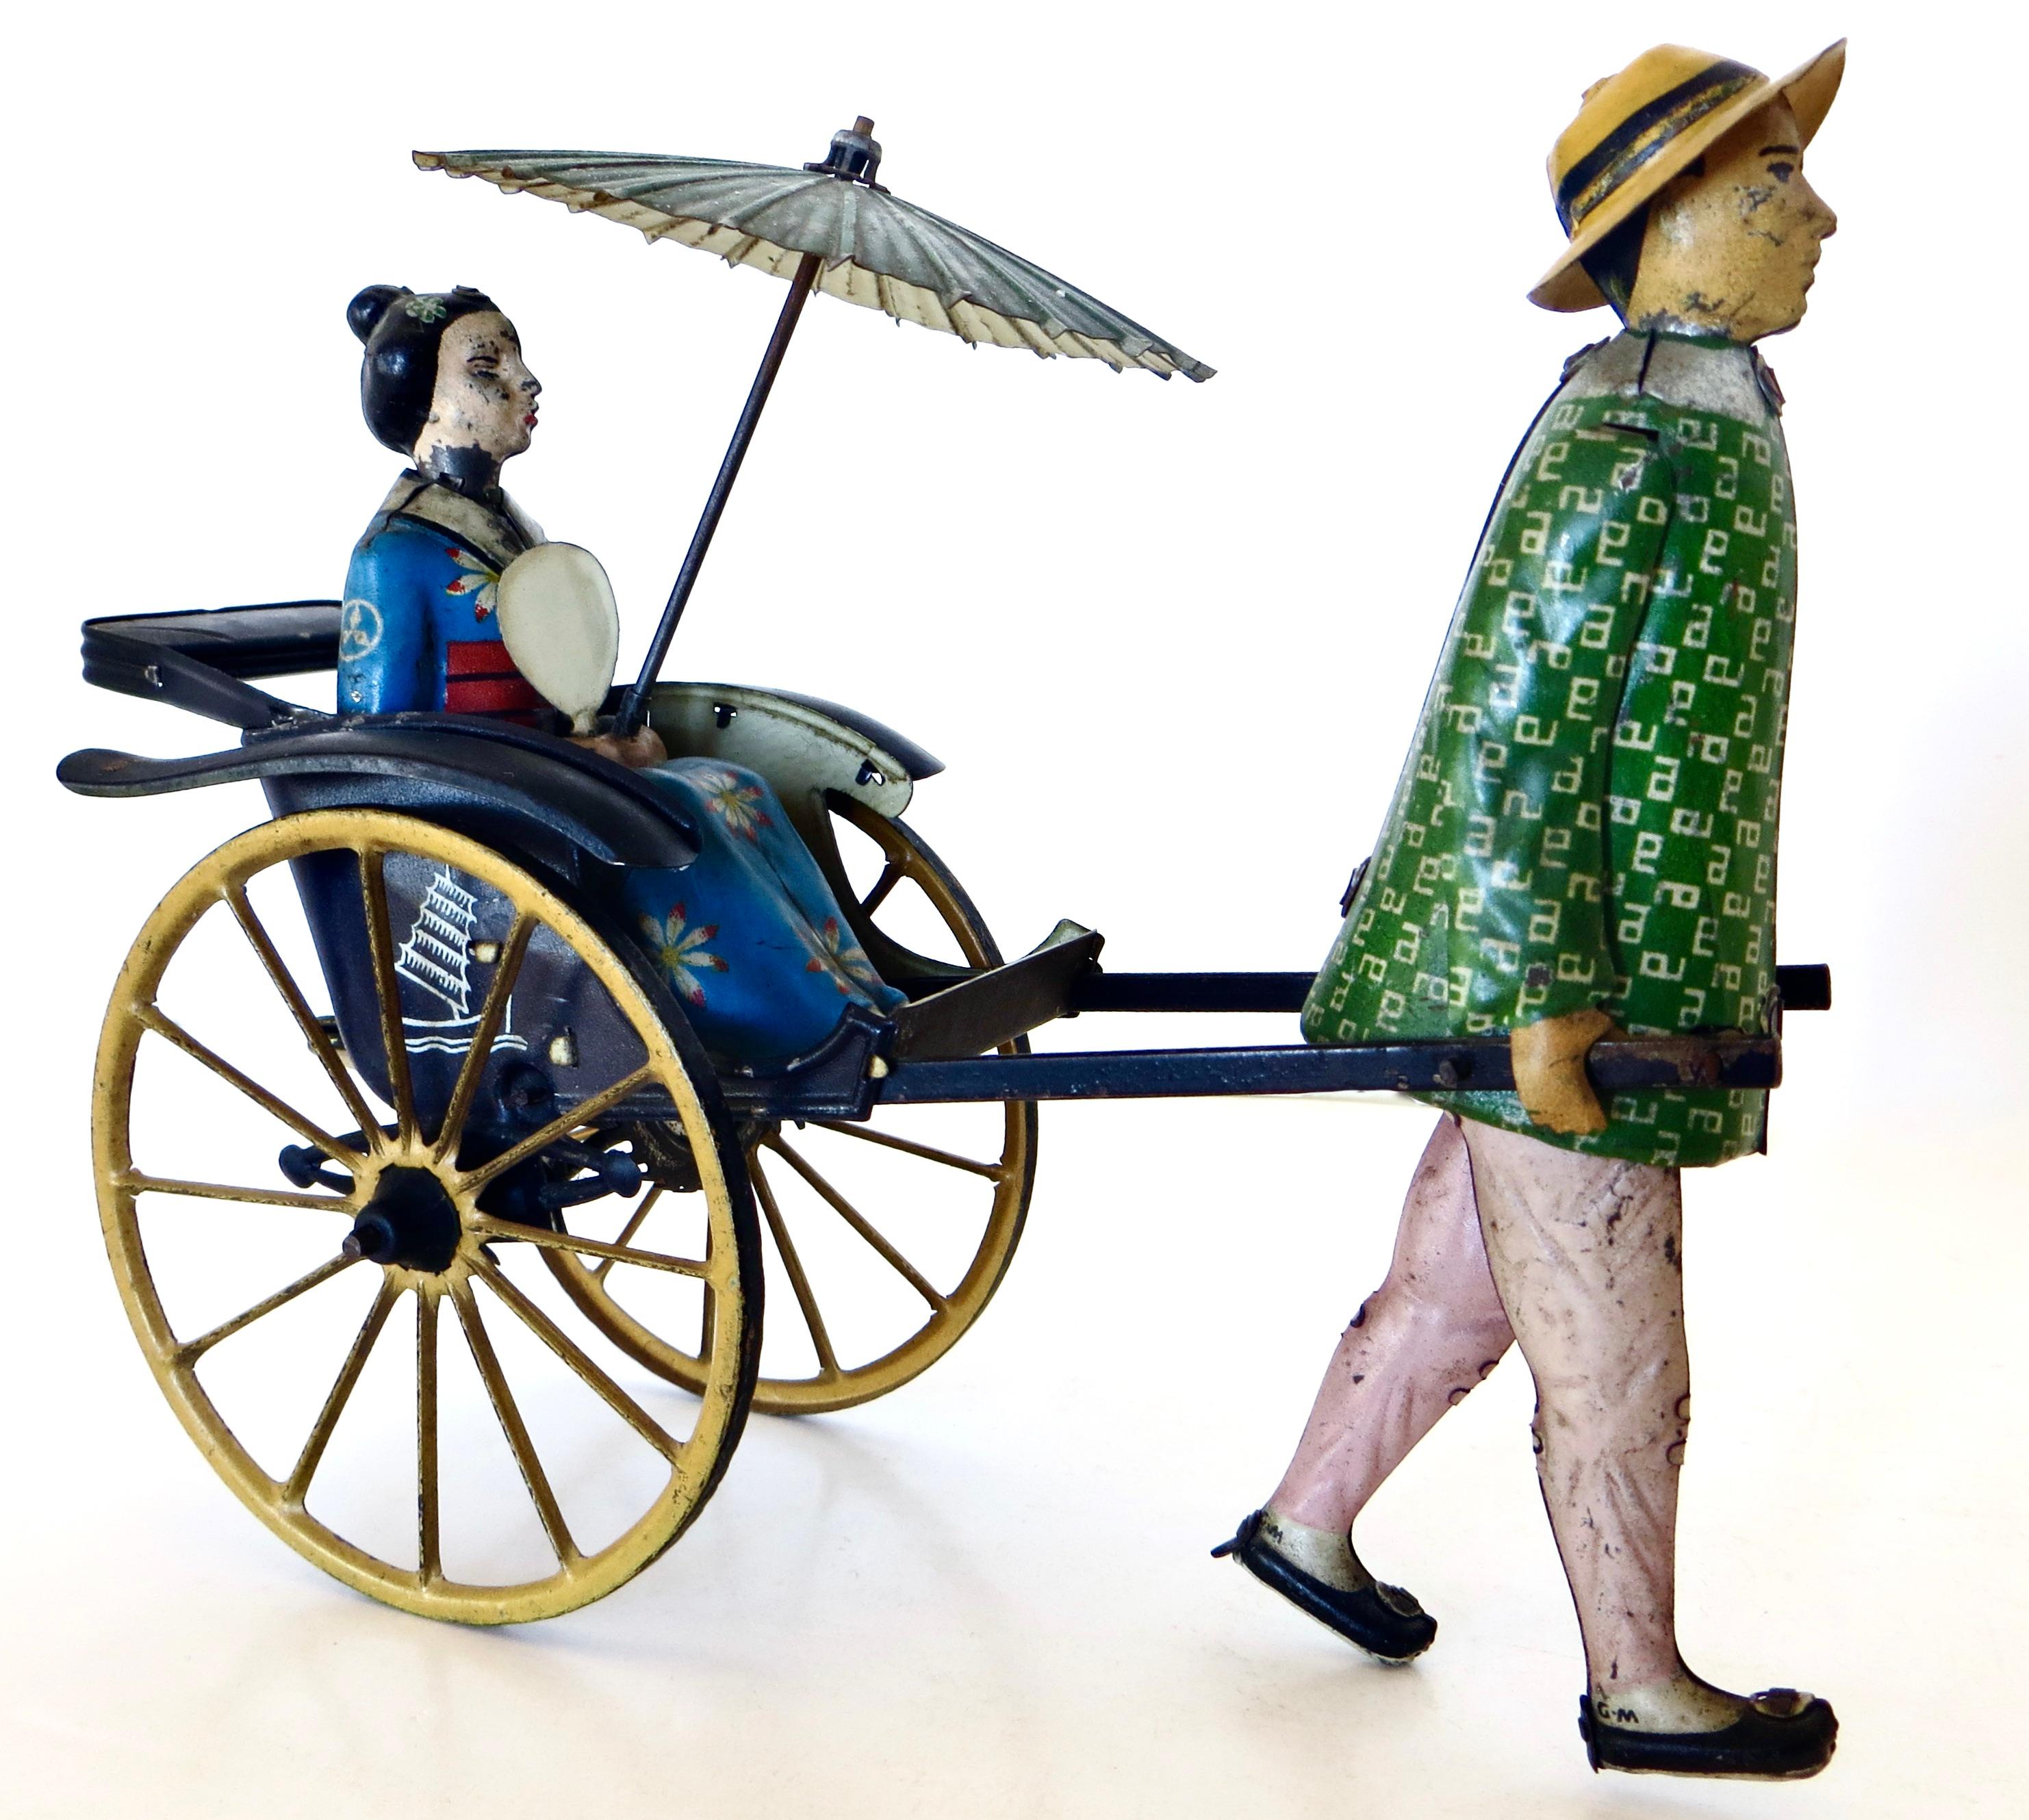  Jouet à remonter en étain peint et lithographié à la main par le premier fabricant de jouets en étain et fantaisistes, Ernest Paul Lehman, vers 1913. Ce jouet charmant et unique représente un Japonais tirant une geisha assise à l'arrière d'un